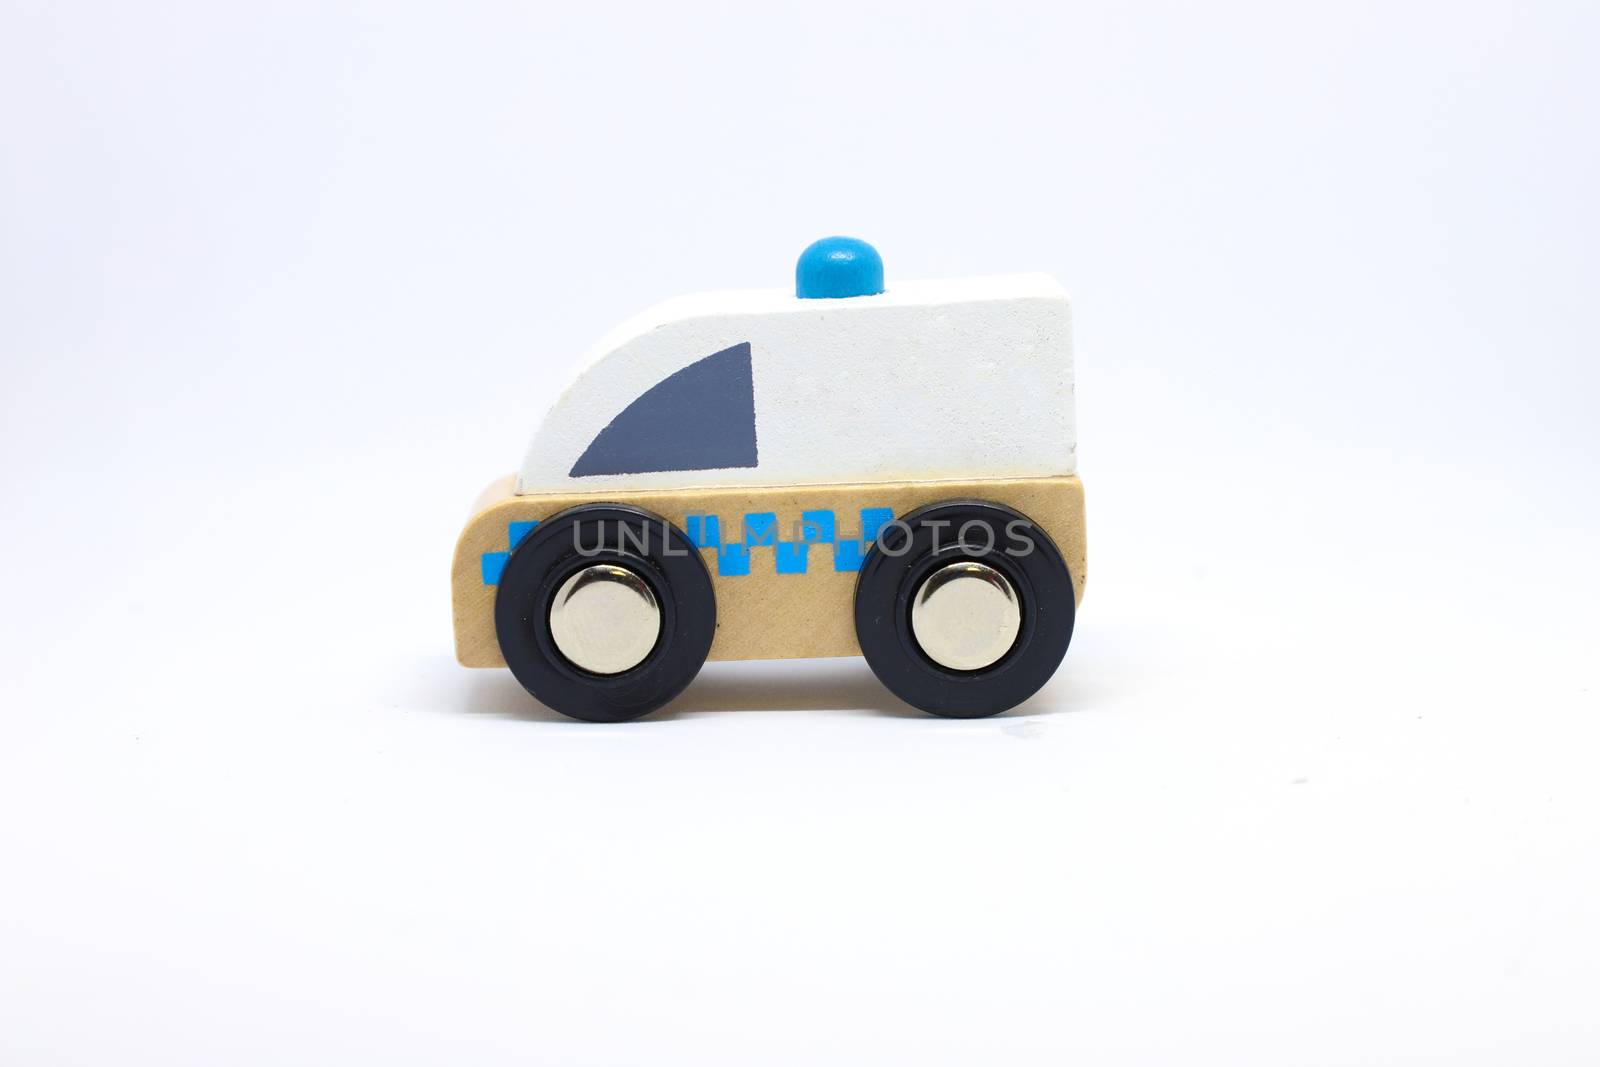 a toy ambulance by Nawoot